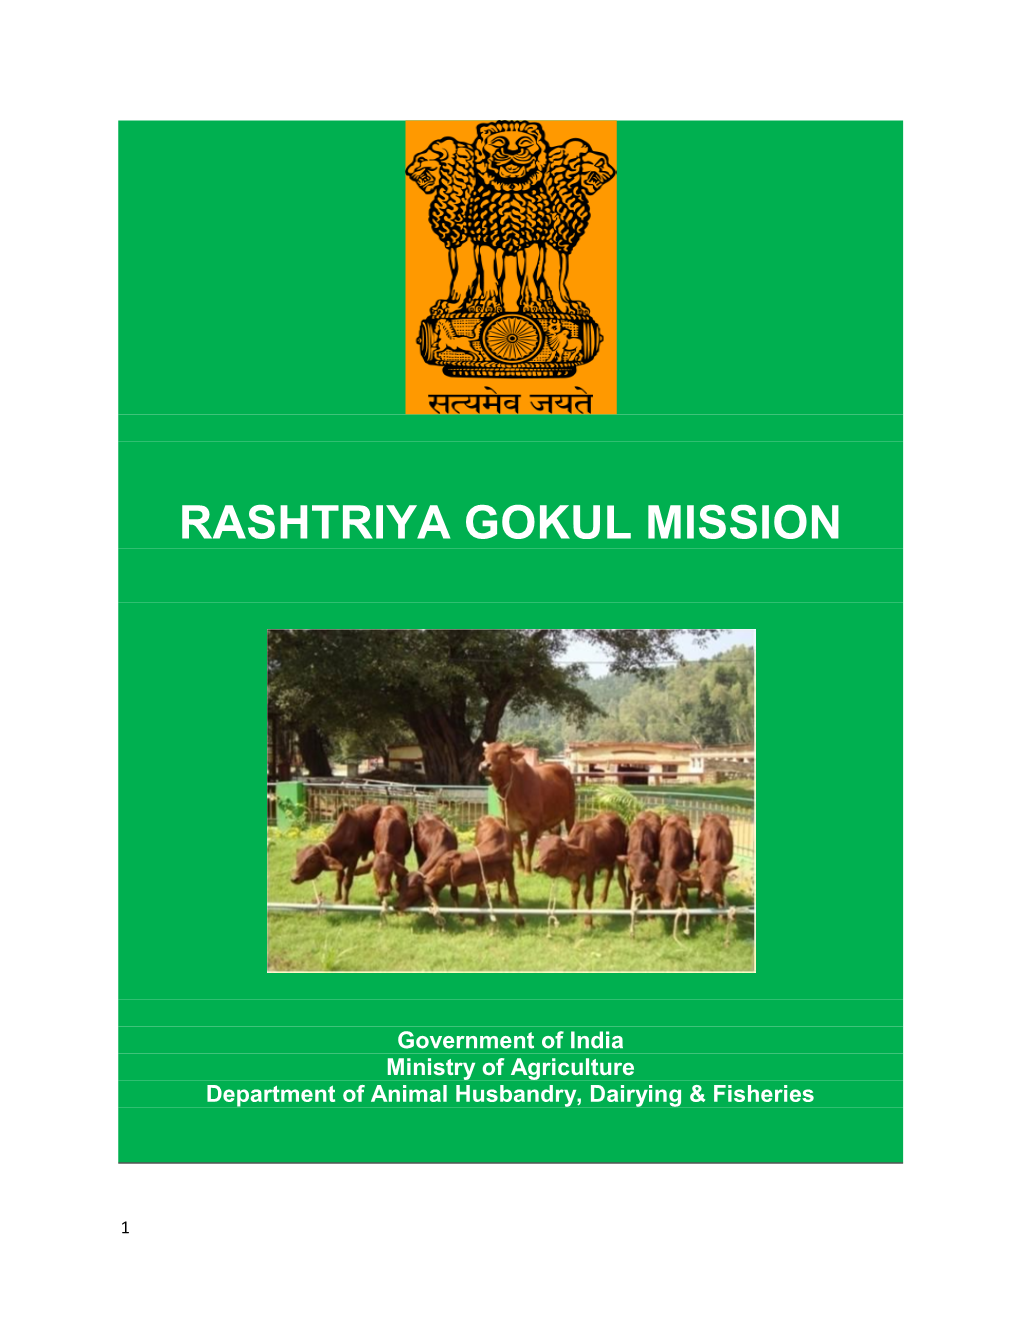 Rashtriya Gokul Mission